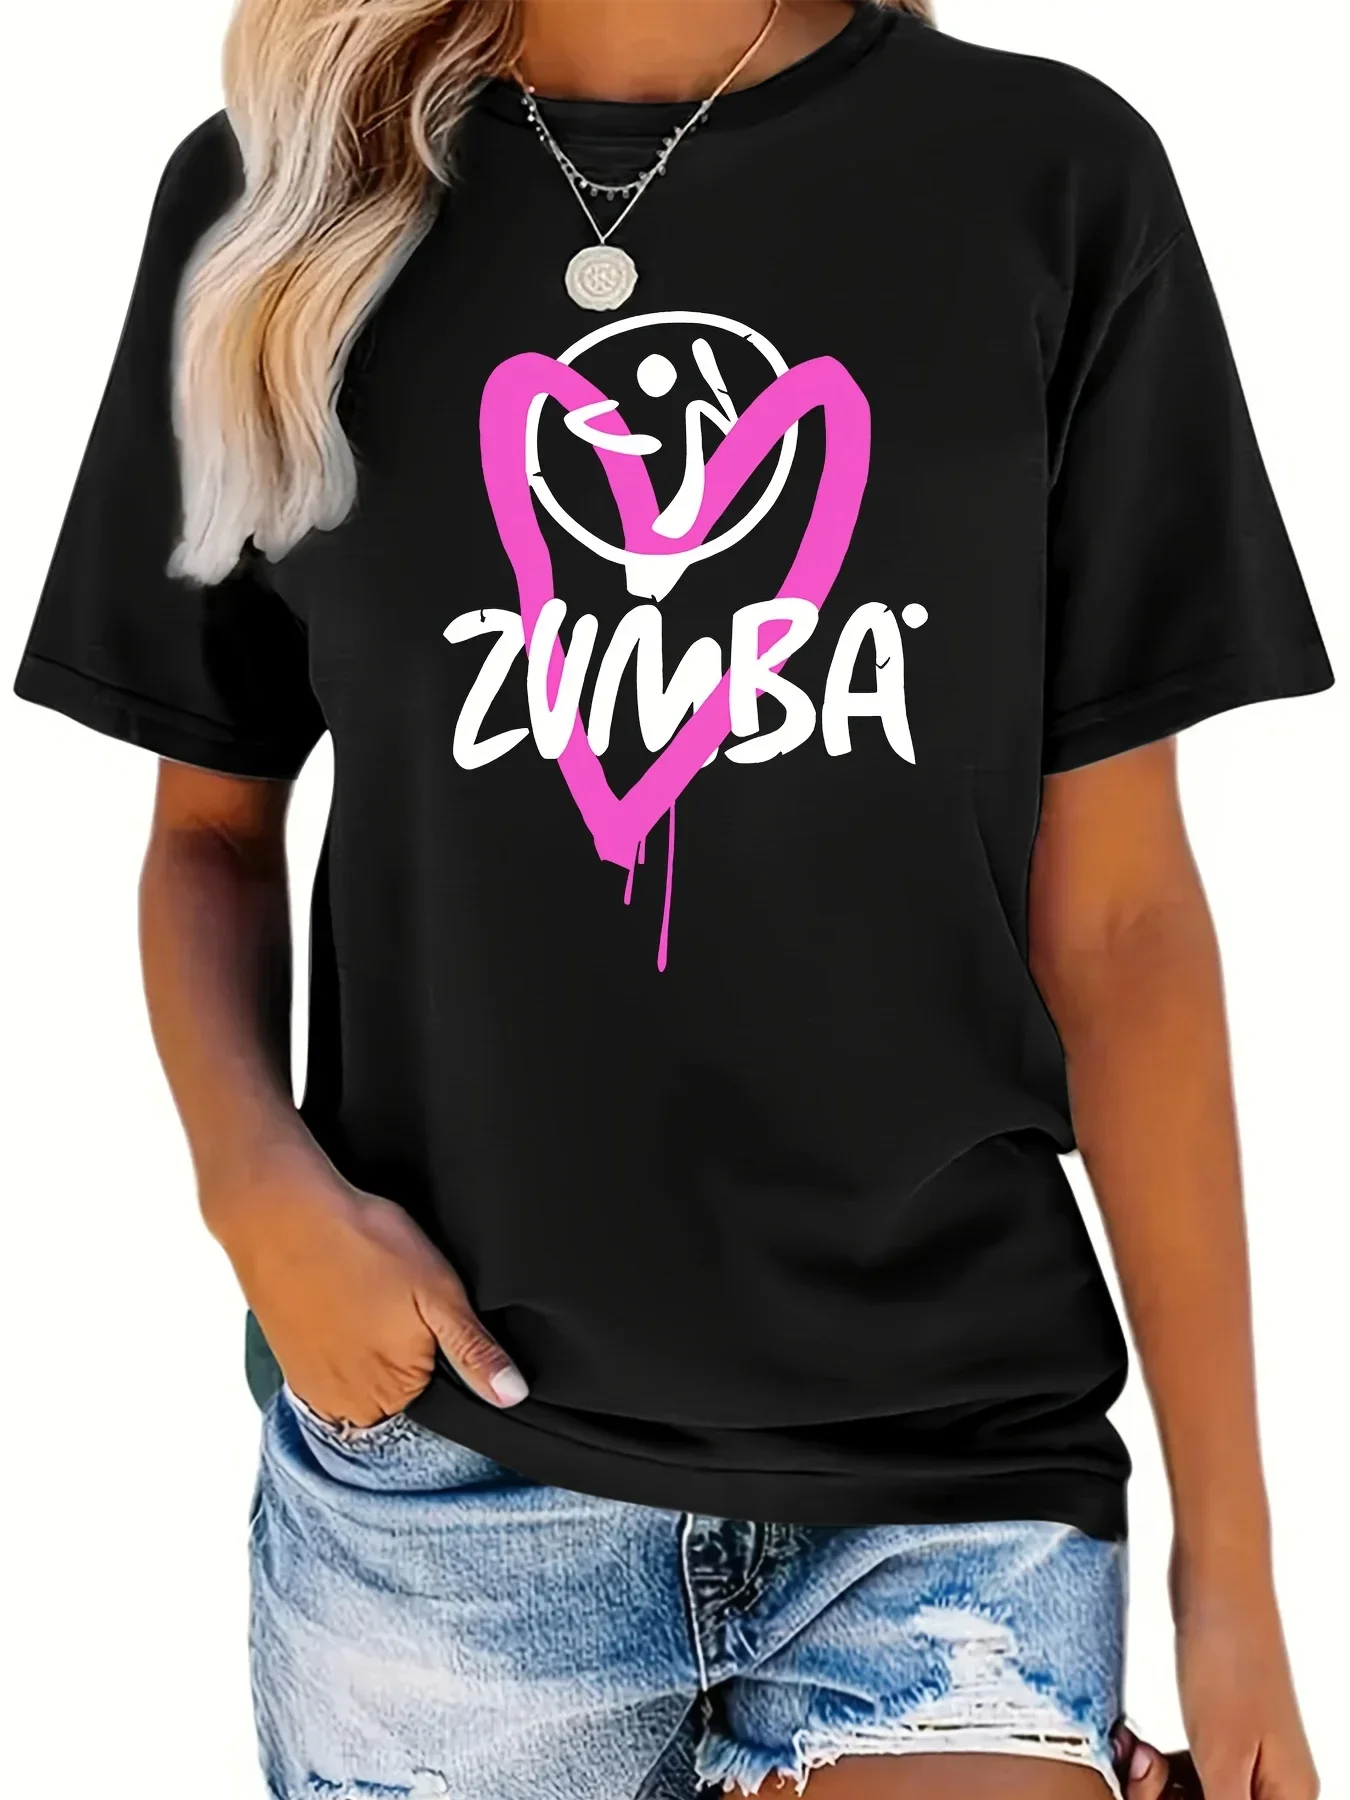 

Повседневная футболка с принтом сердец и букв, универсальная спортивная футболка с круглым вырезом и коротким рукавом, женские удобные топы